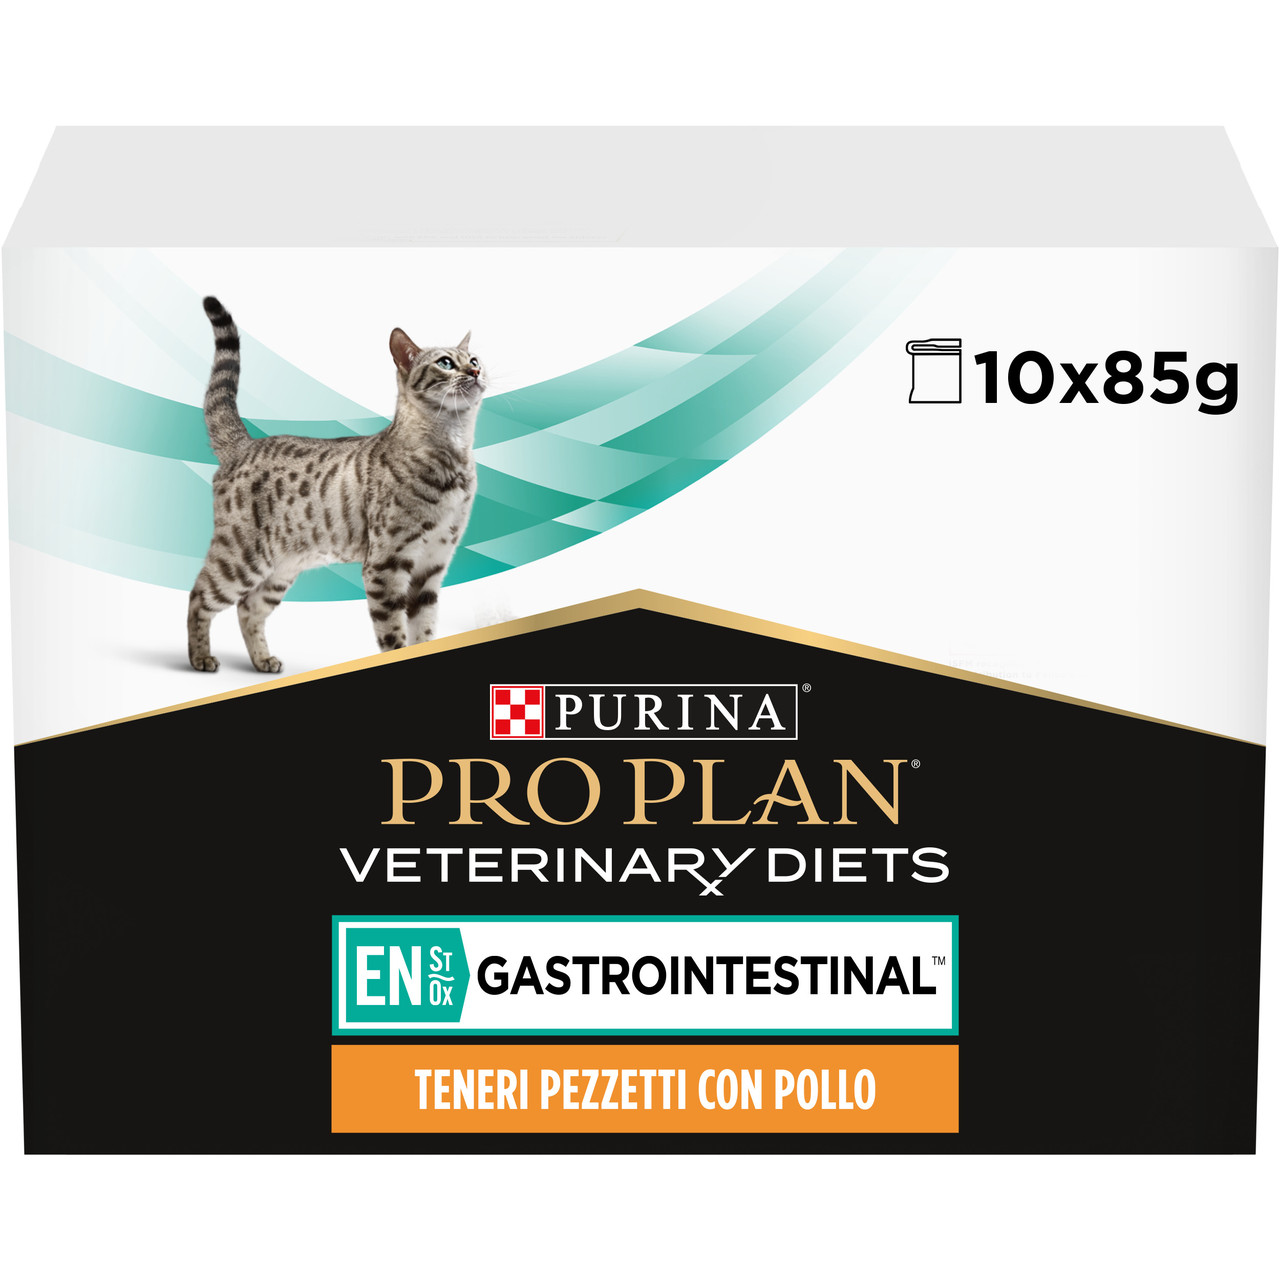 Вологий дієтичний корм PRO PLAN VETERINARY DIETS EN Gastrointestinal для кошенят та дорослих котів для зменшення розладів кишкової